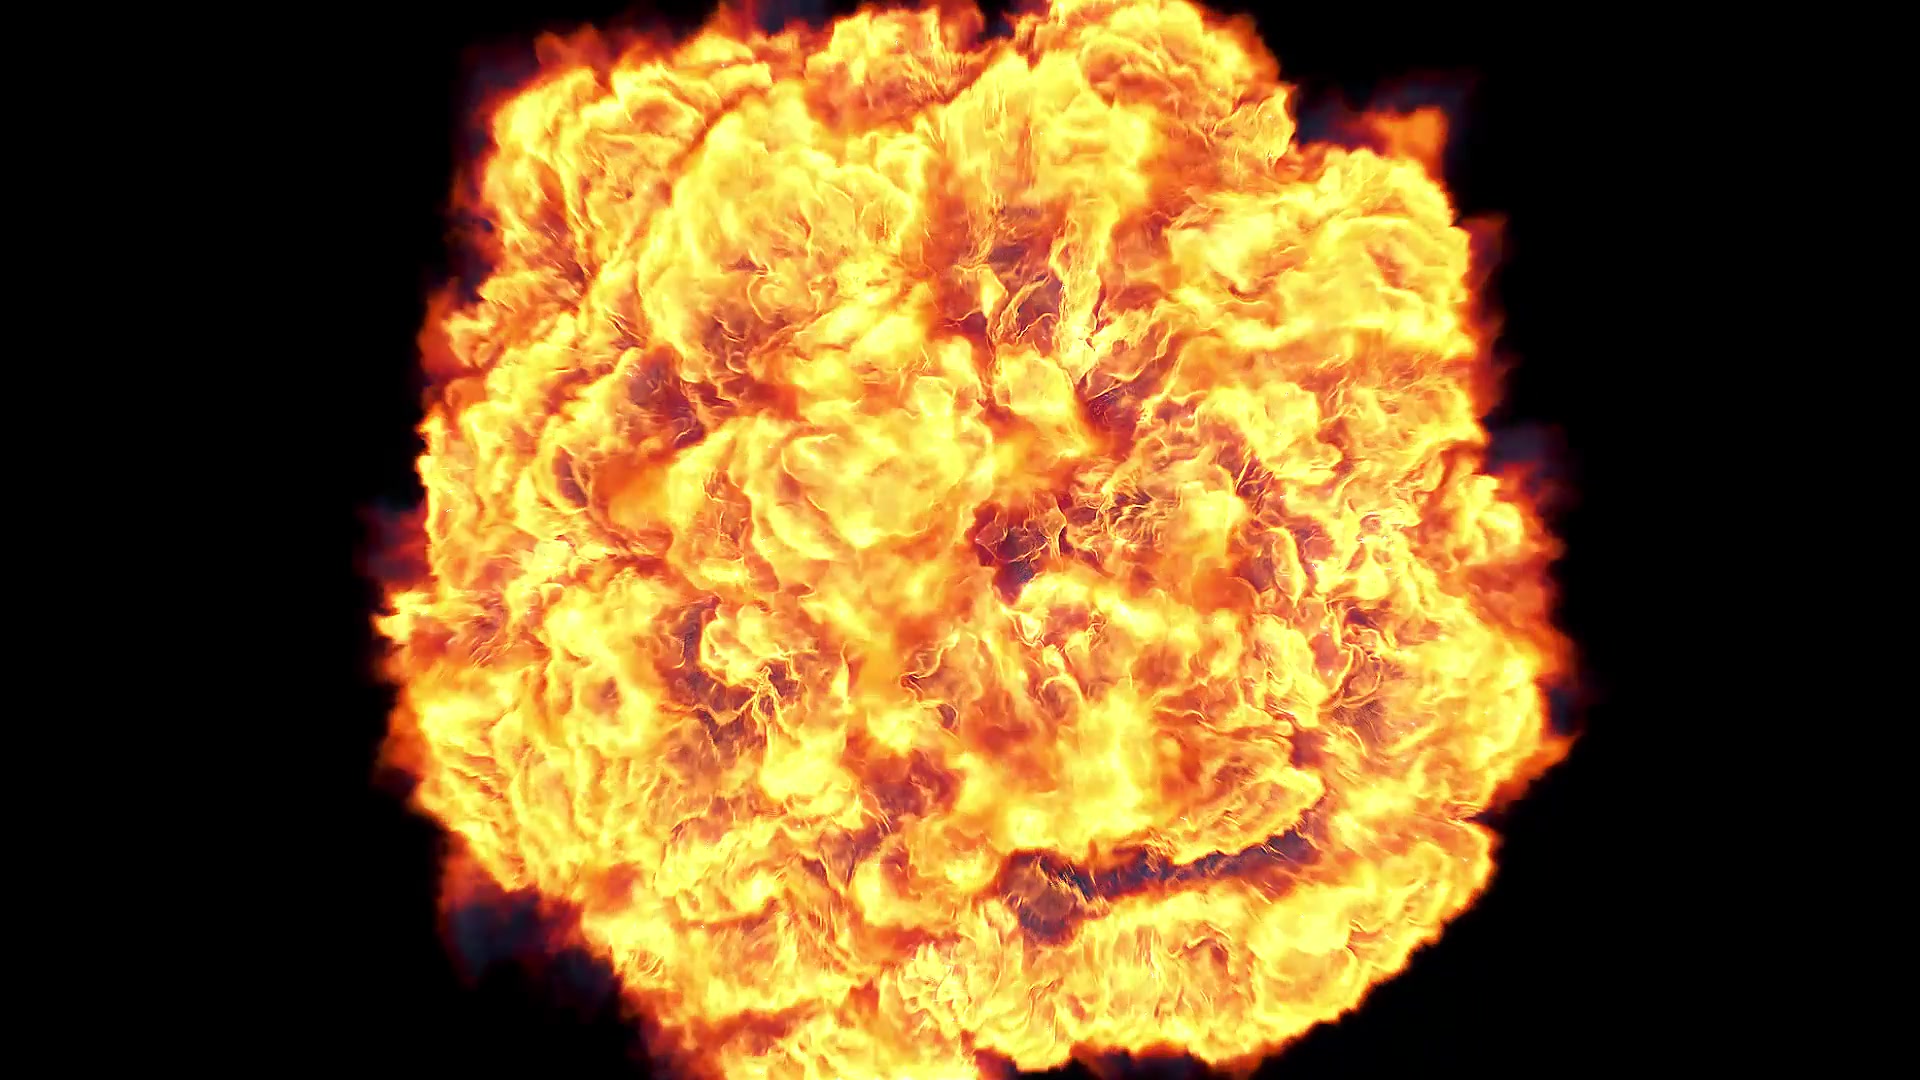 Fire Explosion Logo Reveal II Premire Pro Videohive 37550592 Premiere Pro Image 3